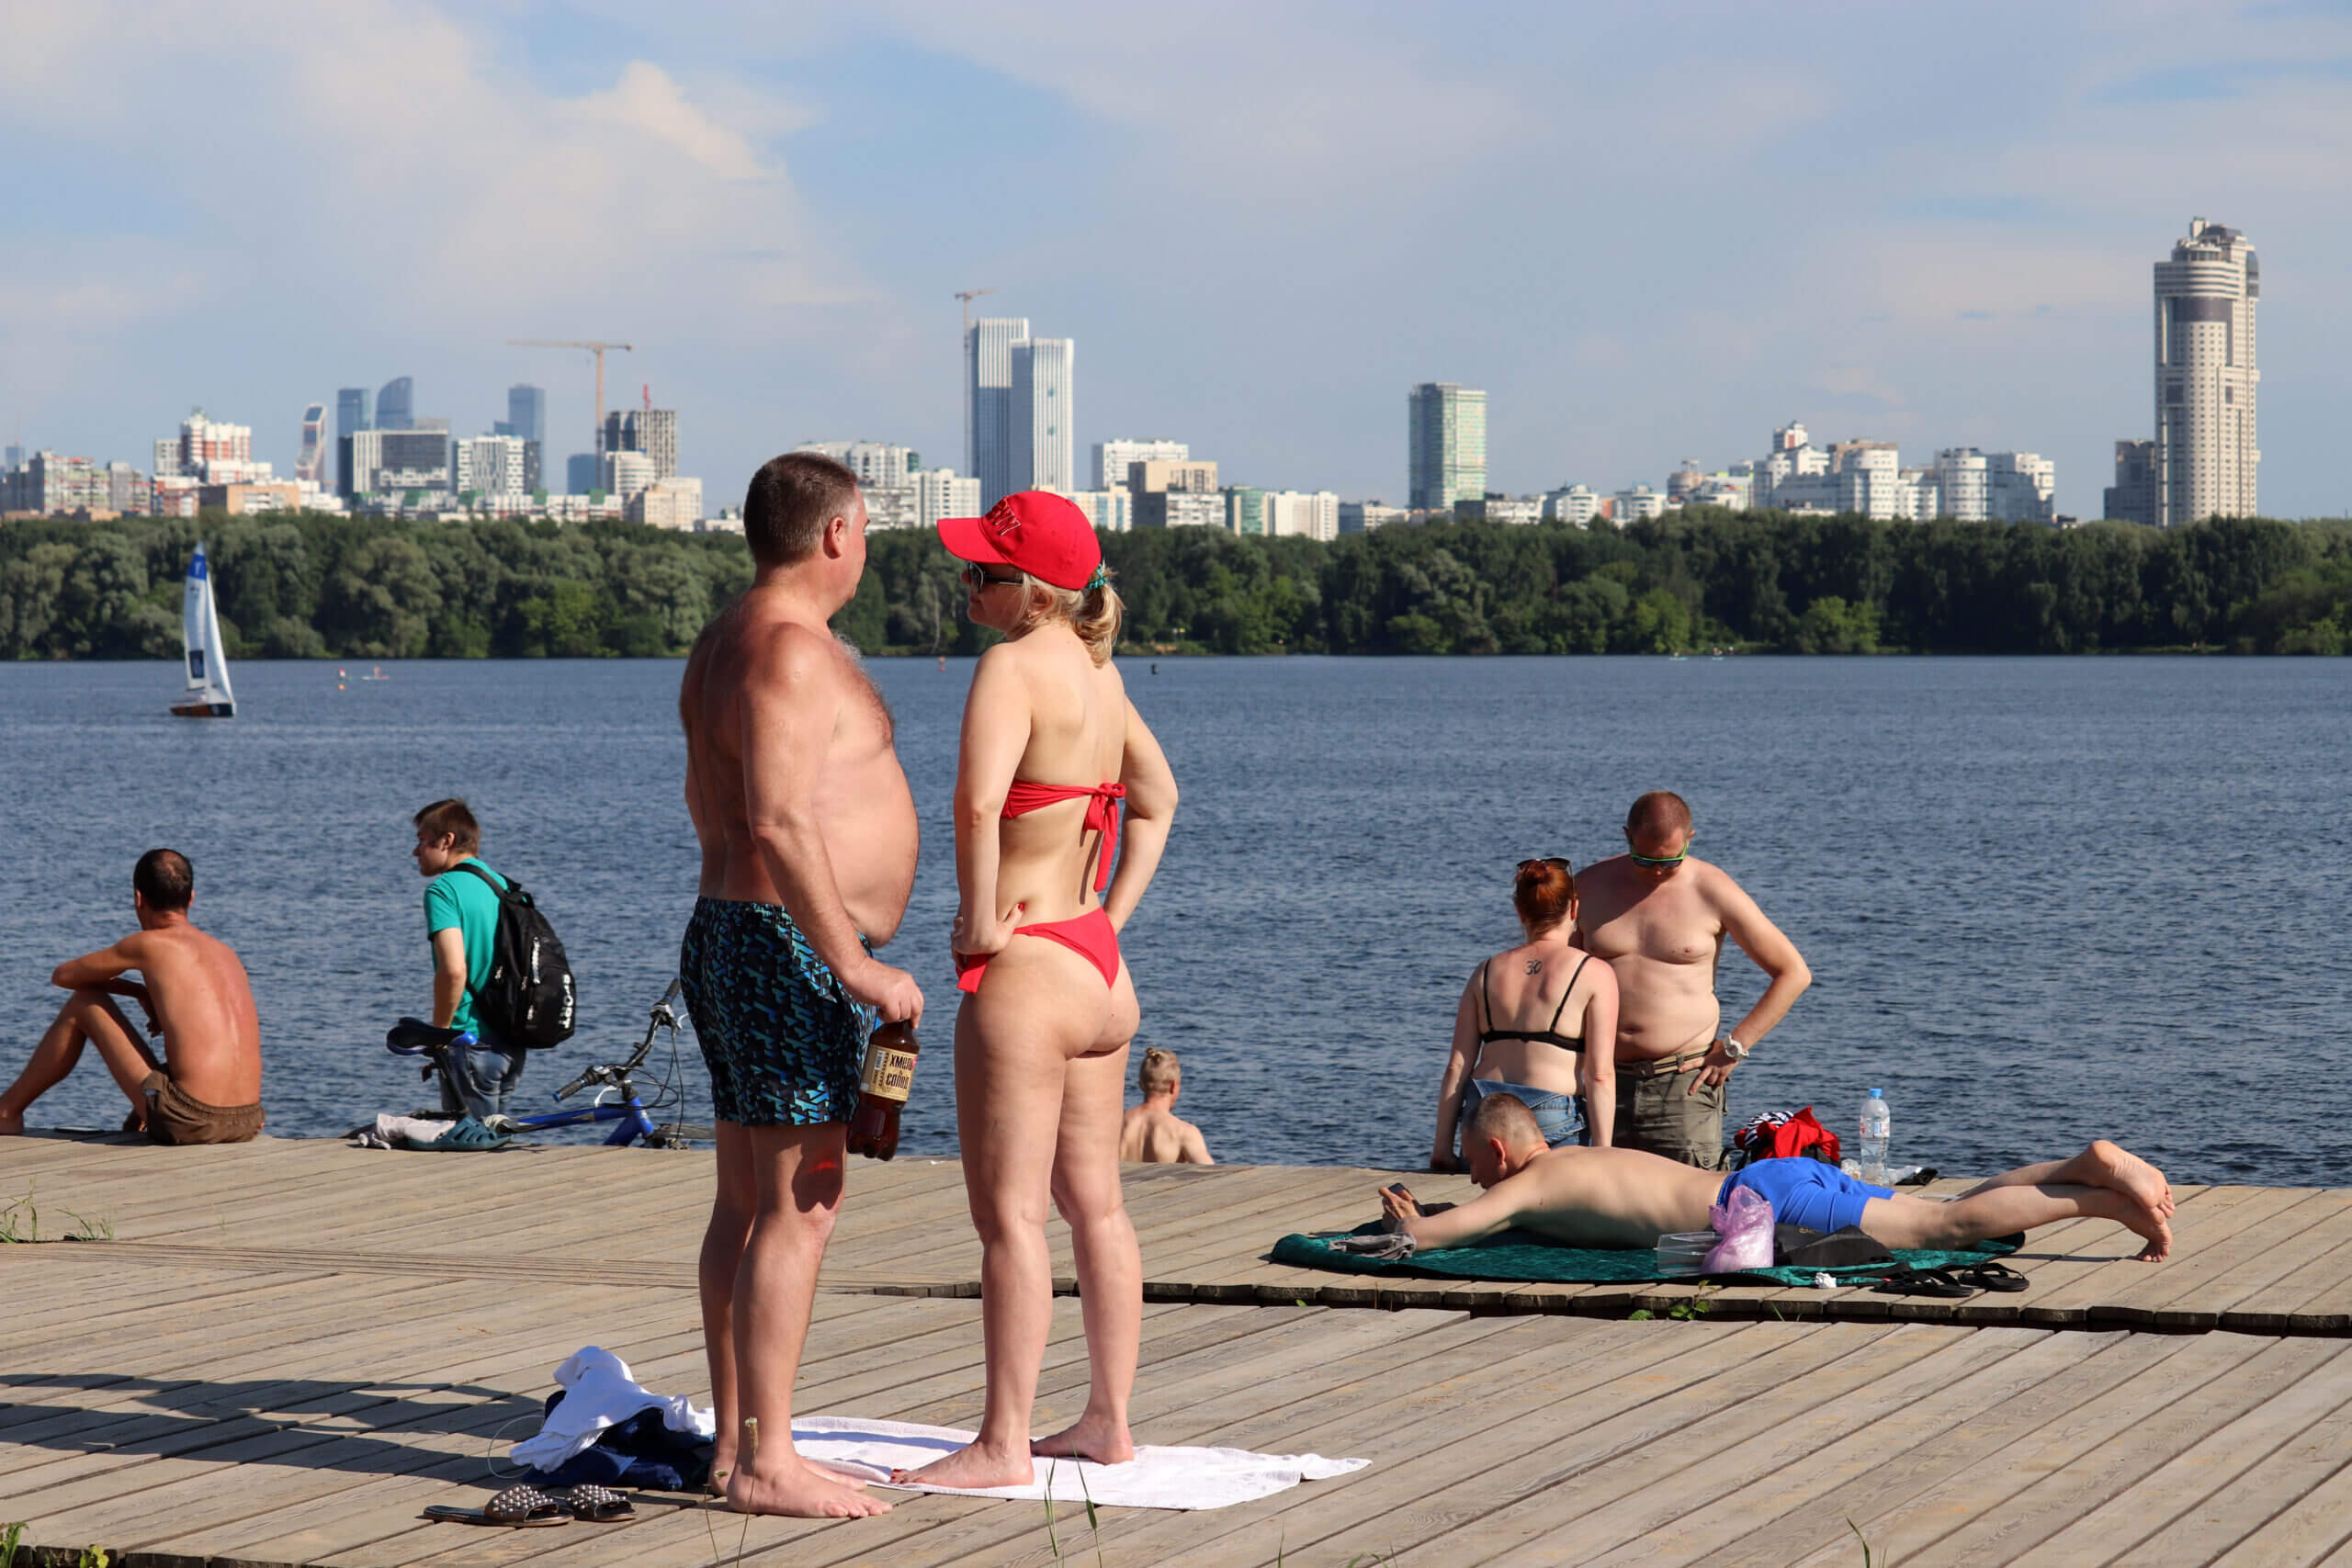 אנשים משתזפים במוסקבה. גל החום של יוני 2021. צילום: shutterstock